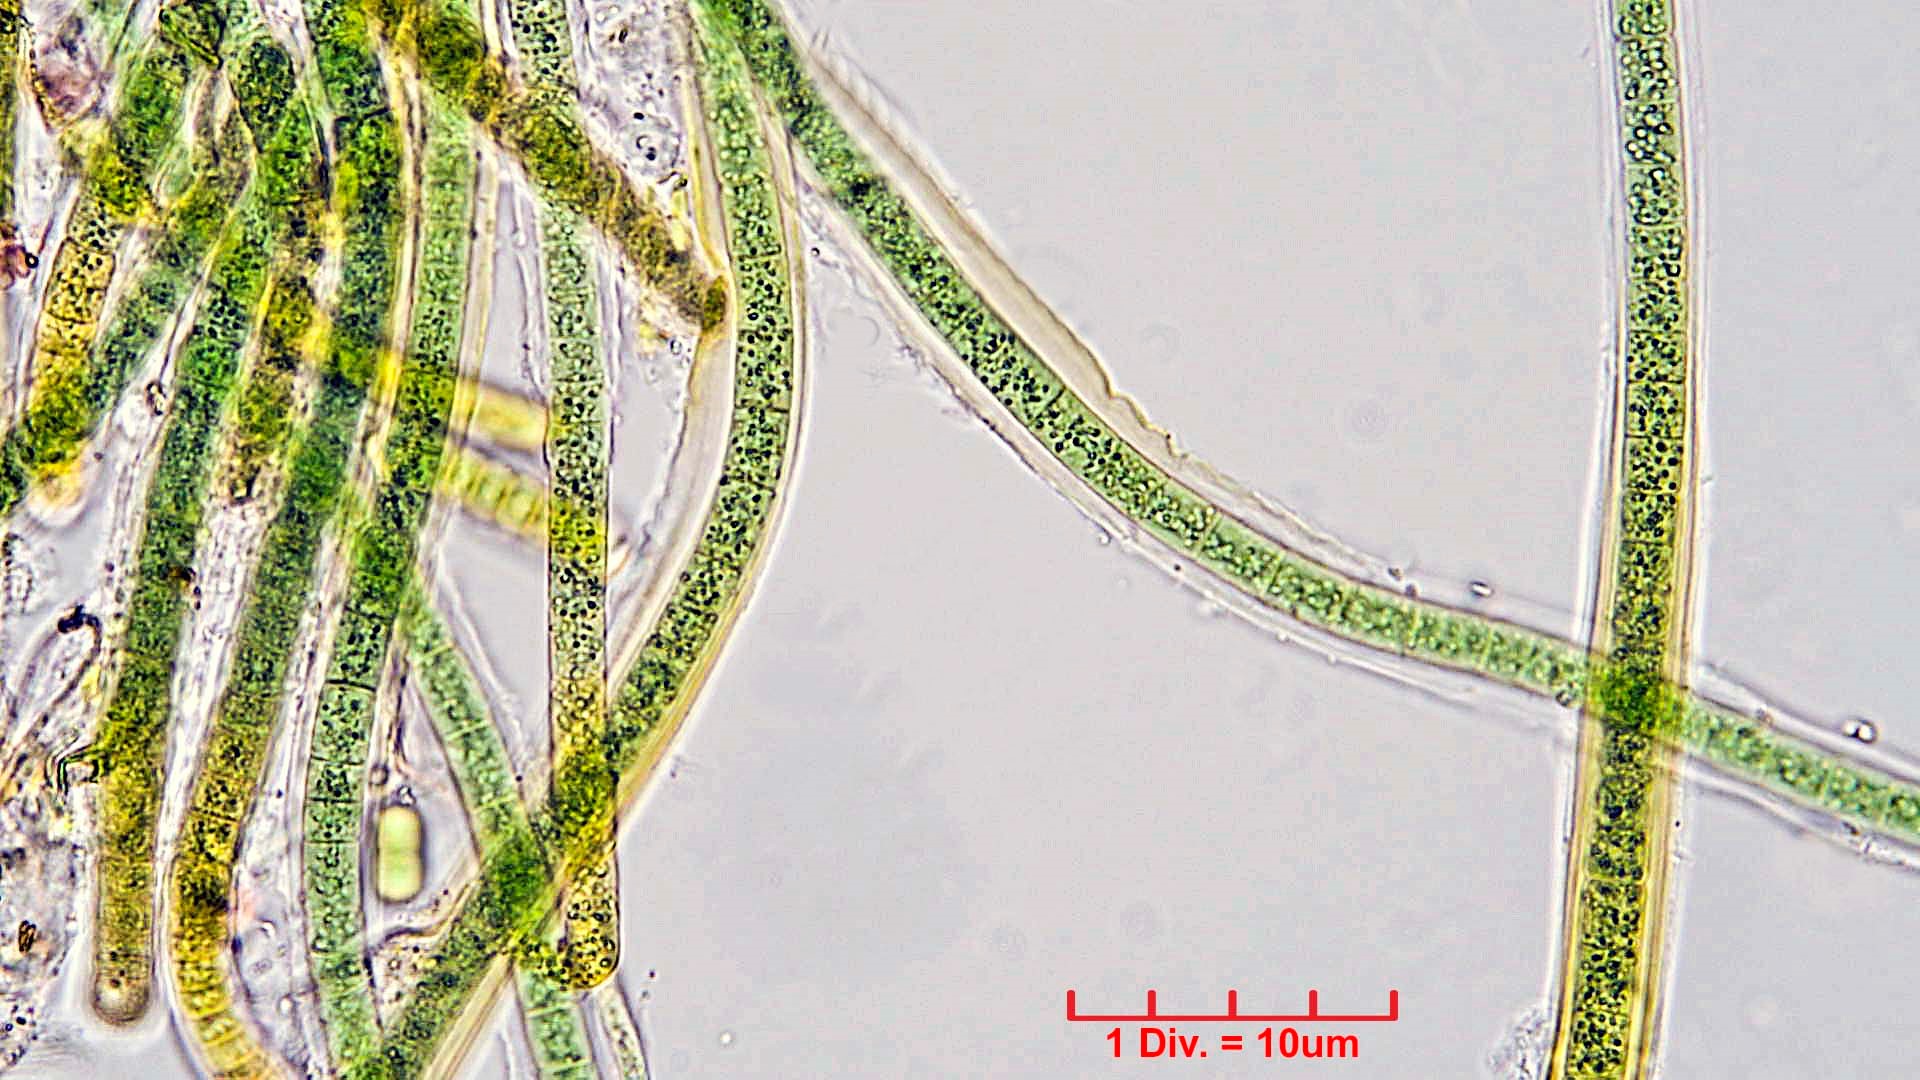 ./././Cyanobacteria/Nostocales/Tolypothrichaceae/Tolypothrix/calcarata/tolypothrix-calcarata-319.jpg